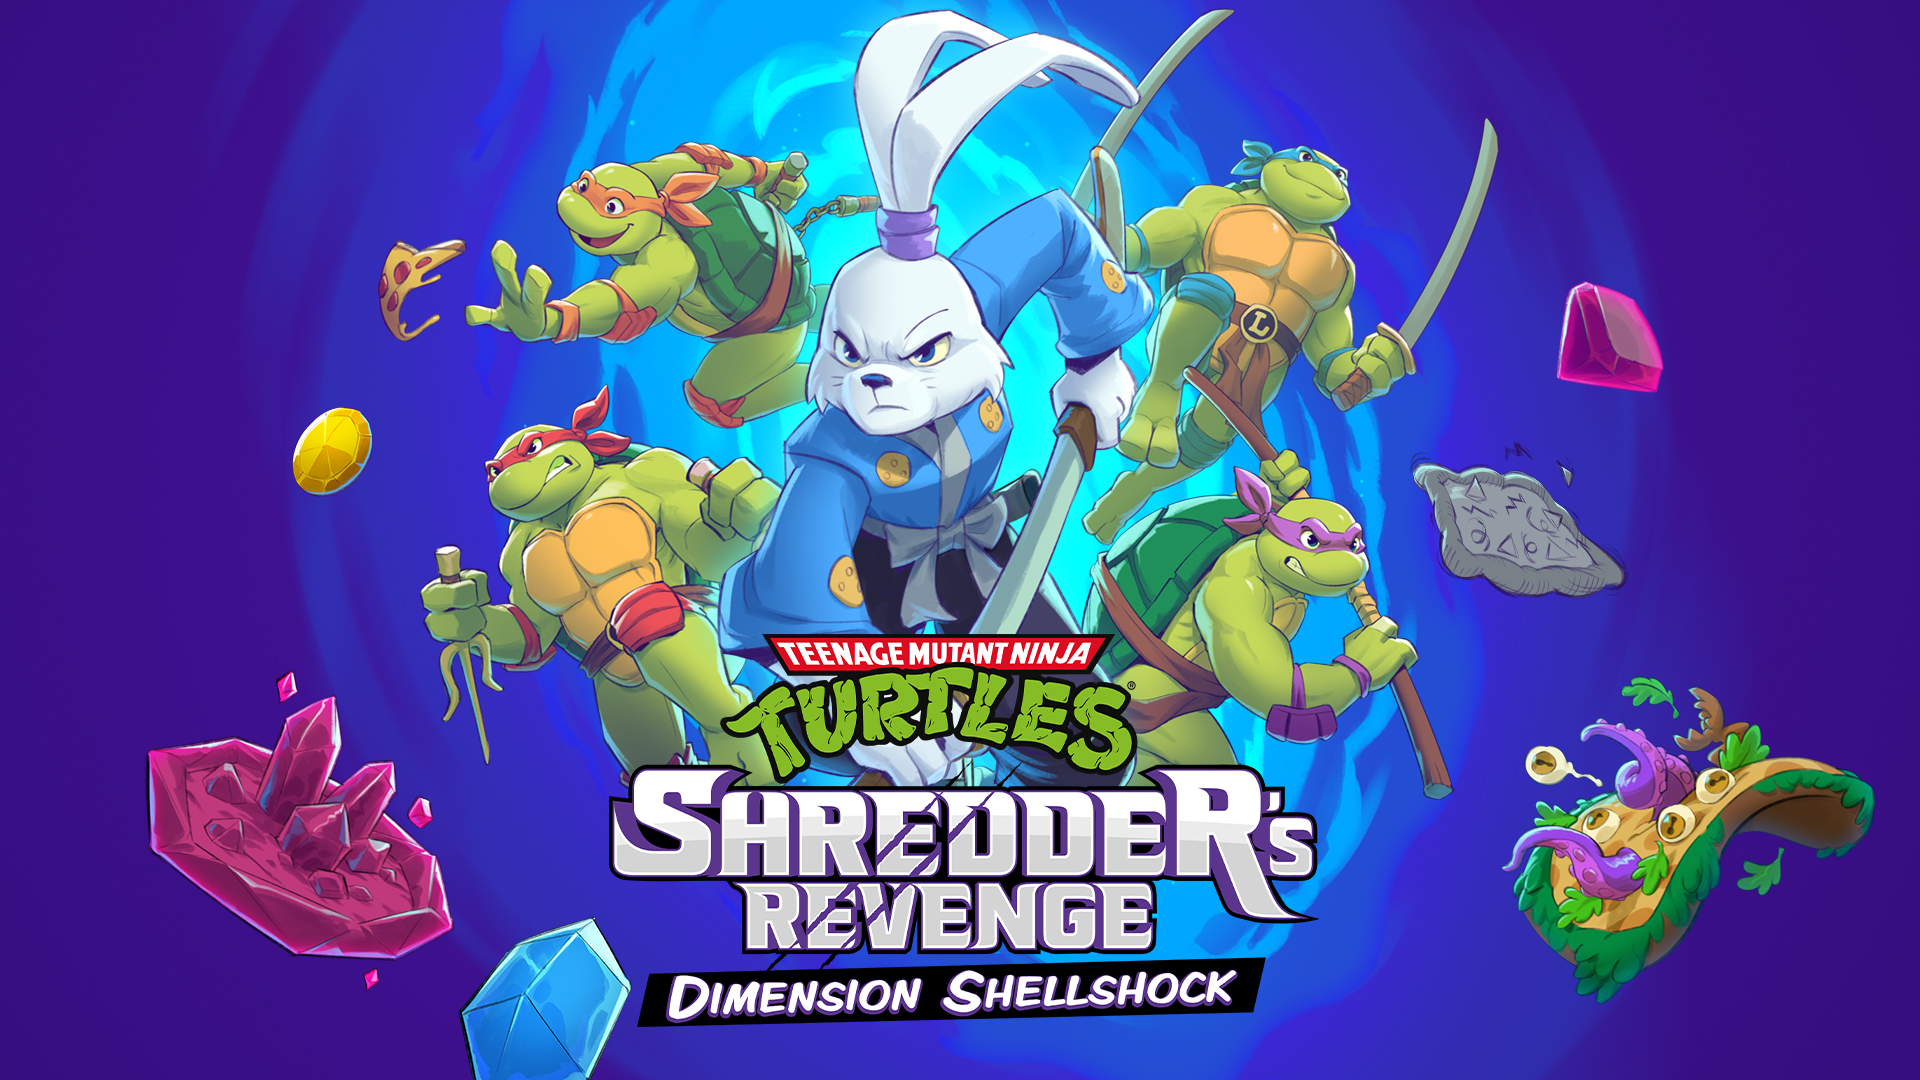 New Dimension Shellshock DLC trailer details Survival Mode in Shredder’s Revenge